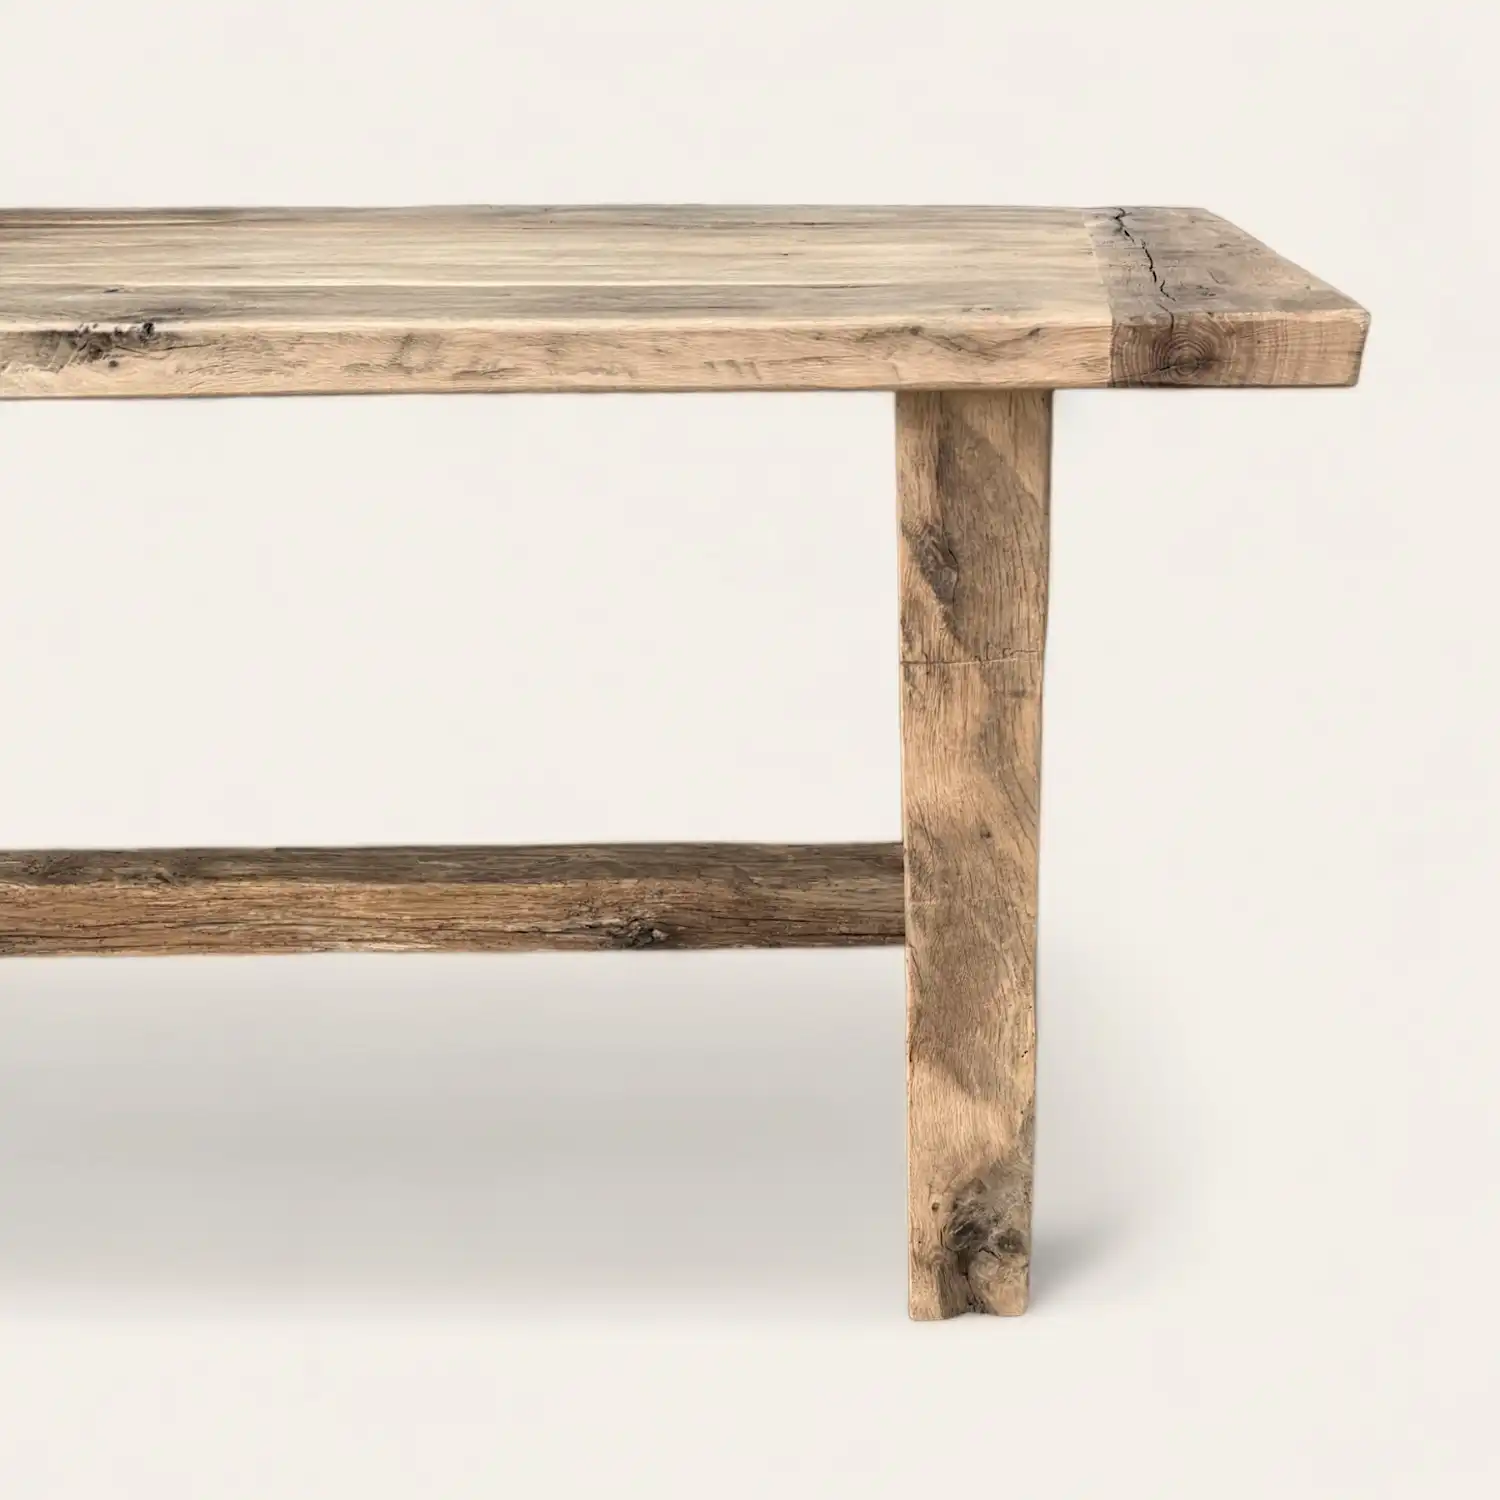  Une table à manger rustique en bois avec un plateau en bois ancien. 